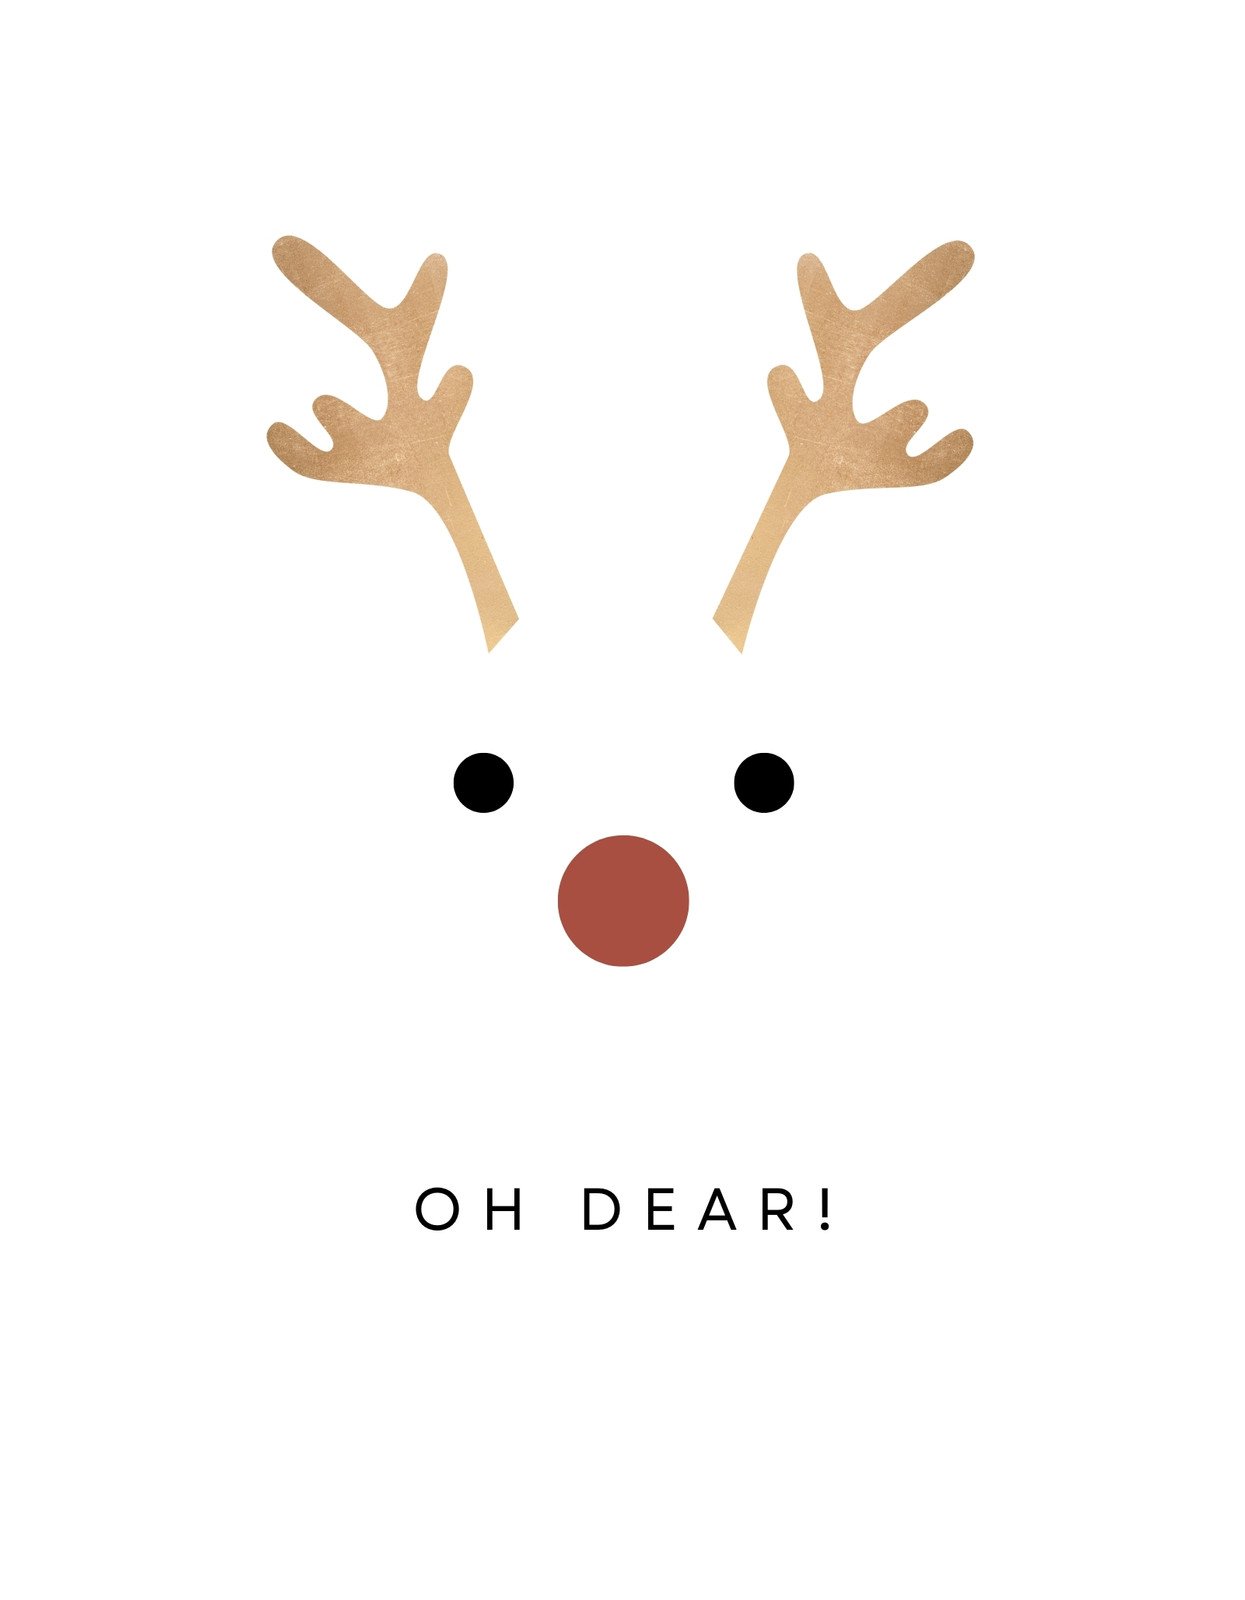 Cute Christmas Reindeer Wallpapers